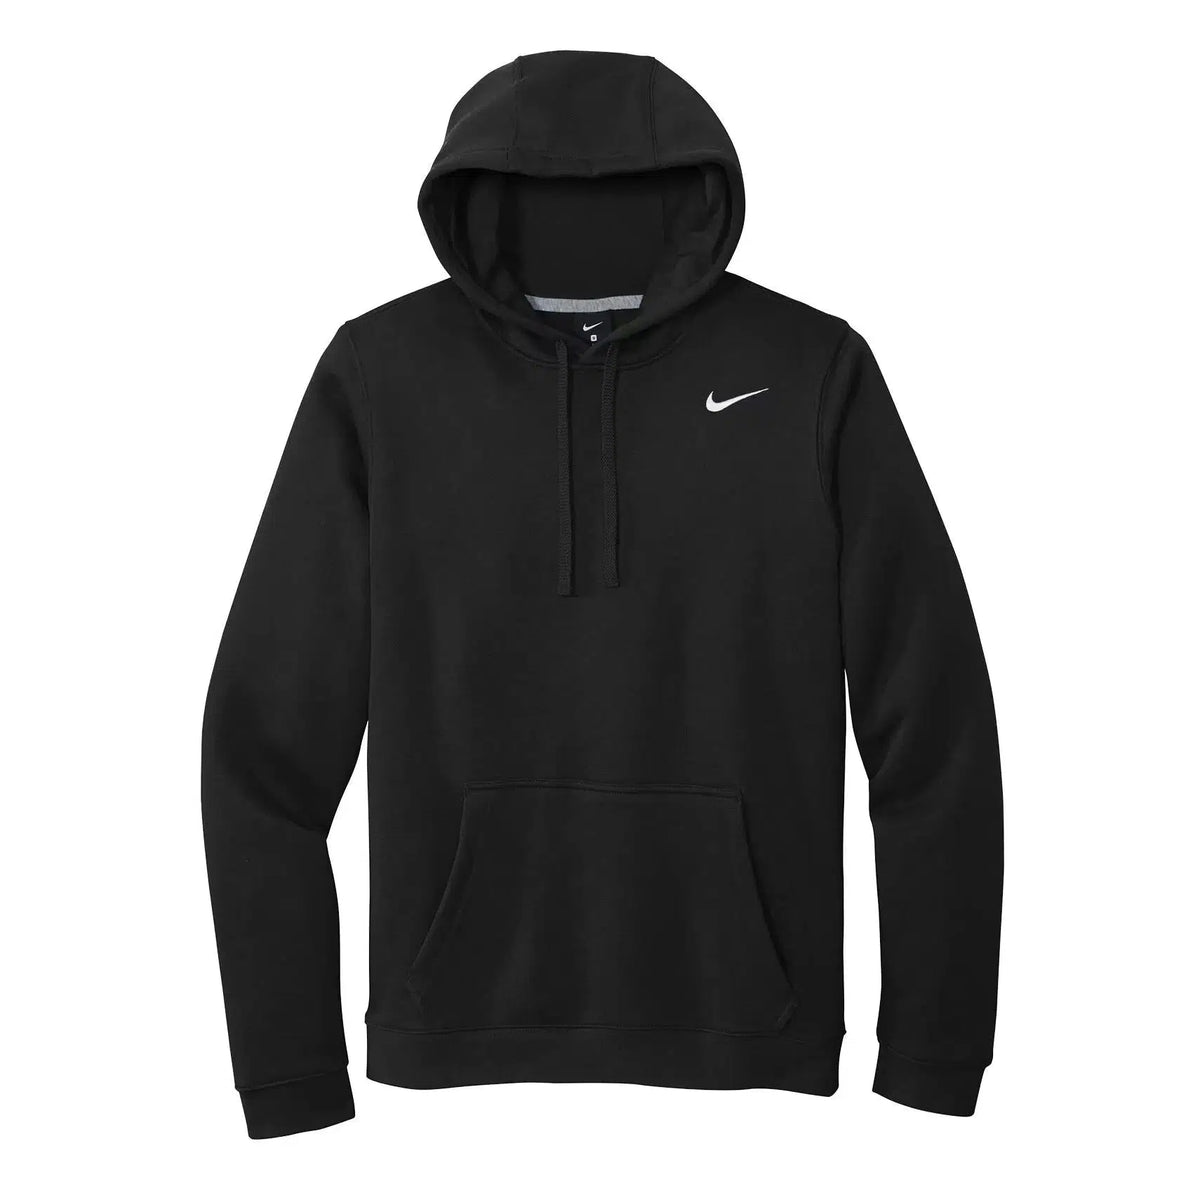 https://canadianproshoponline.com/cdn/shop/files/CYBER-MONDAY-Nike-Sportswear-Club-Fleece-Pullover-Hoodie-Mens-Pullover-4.webp?v=1701099868&width=1200